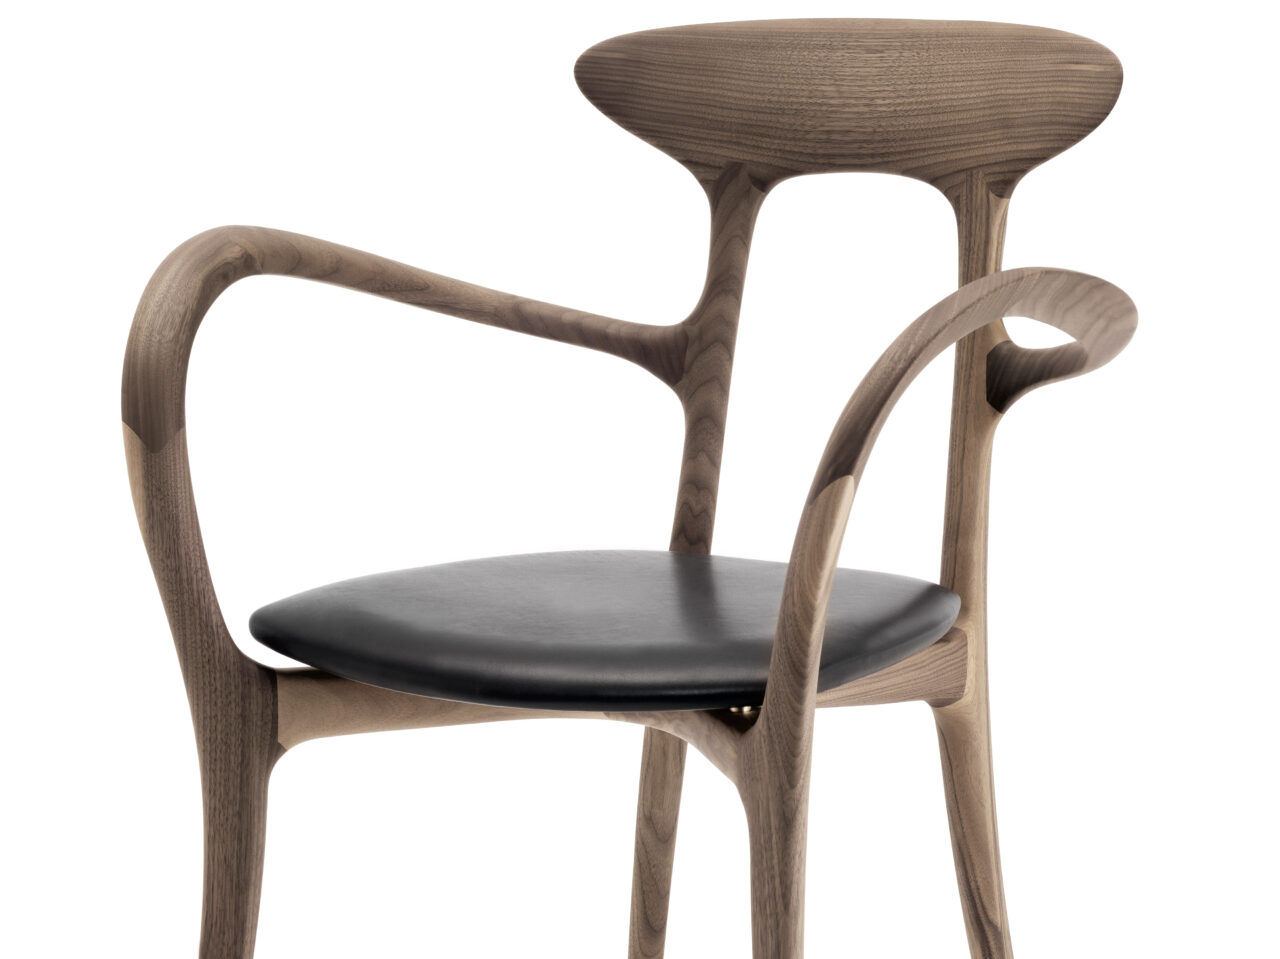 Ma belle è una sedie di design prodotta da Ceccotti Collezioni e proposto da Peverelli